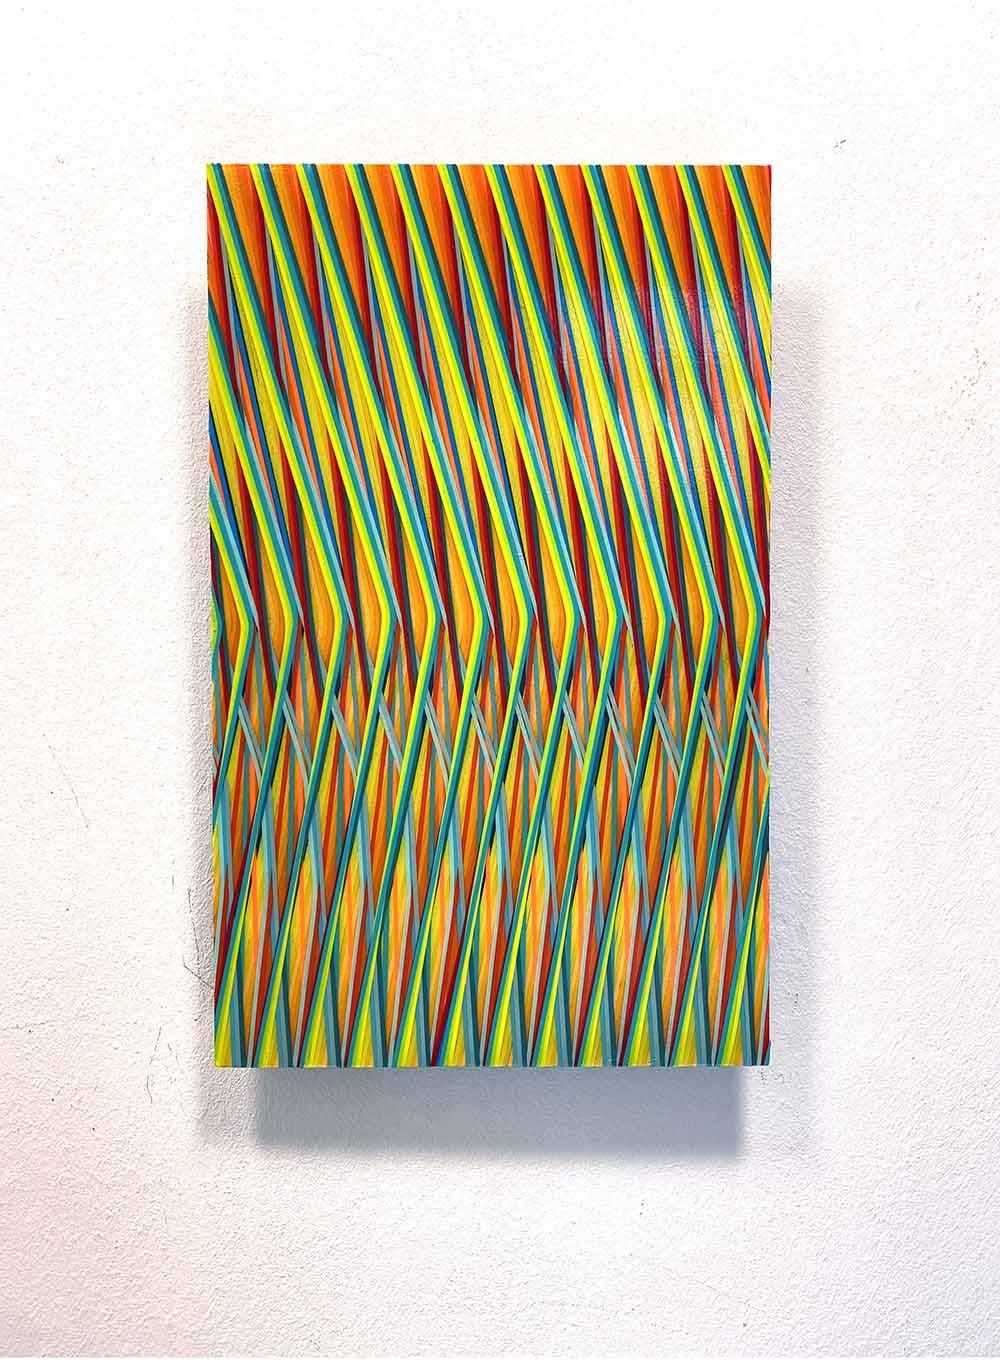 Line 1222-02 est une peinture unique de l'artiste contemporain Ahn Hyun-Ju. La peinture est réalisée avec du polyester, des pigments et de l'acrylique sur de l'aluminium. Les dimensions sont de 50 × 30 cm (19.7 × 11.8 in). 
L'œuvre est signée,